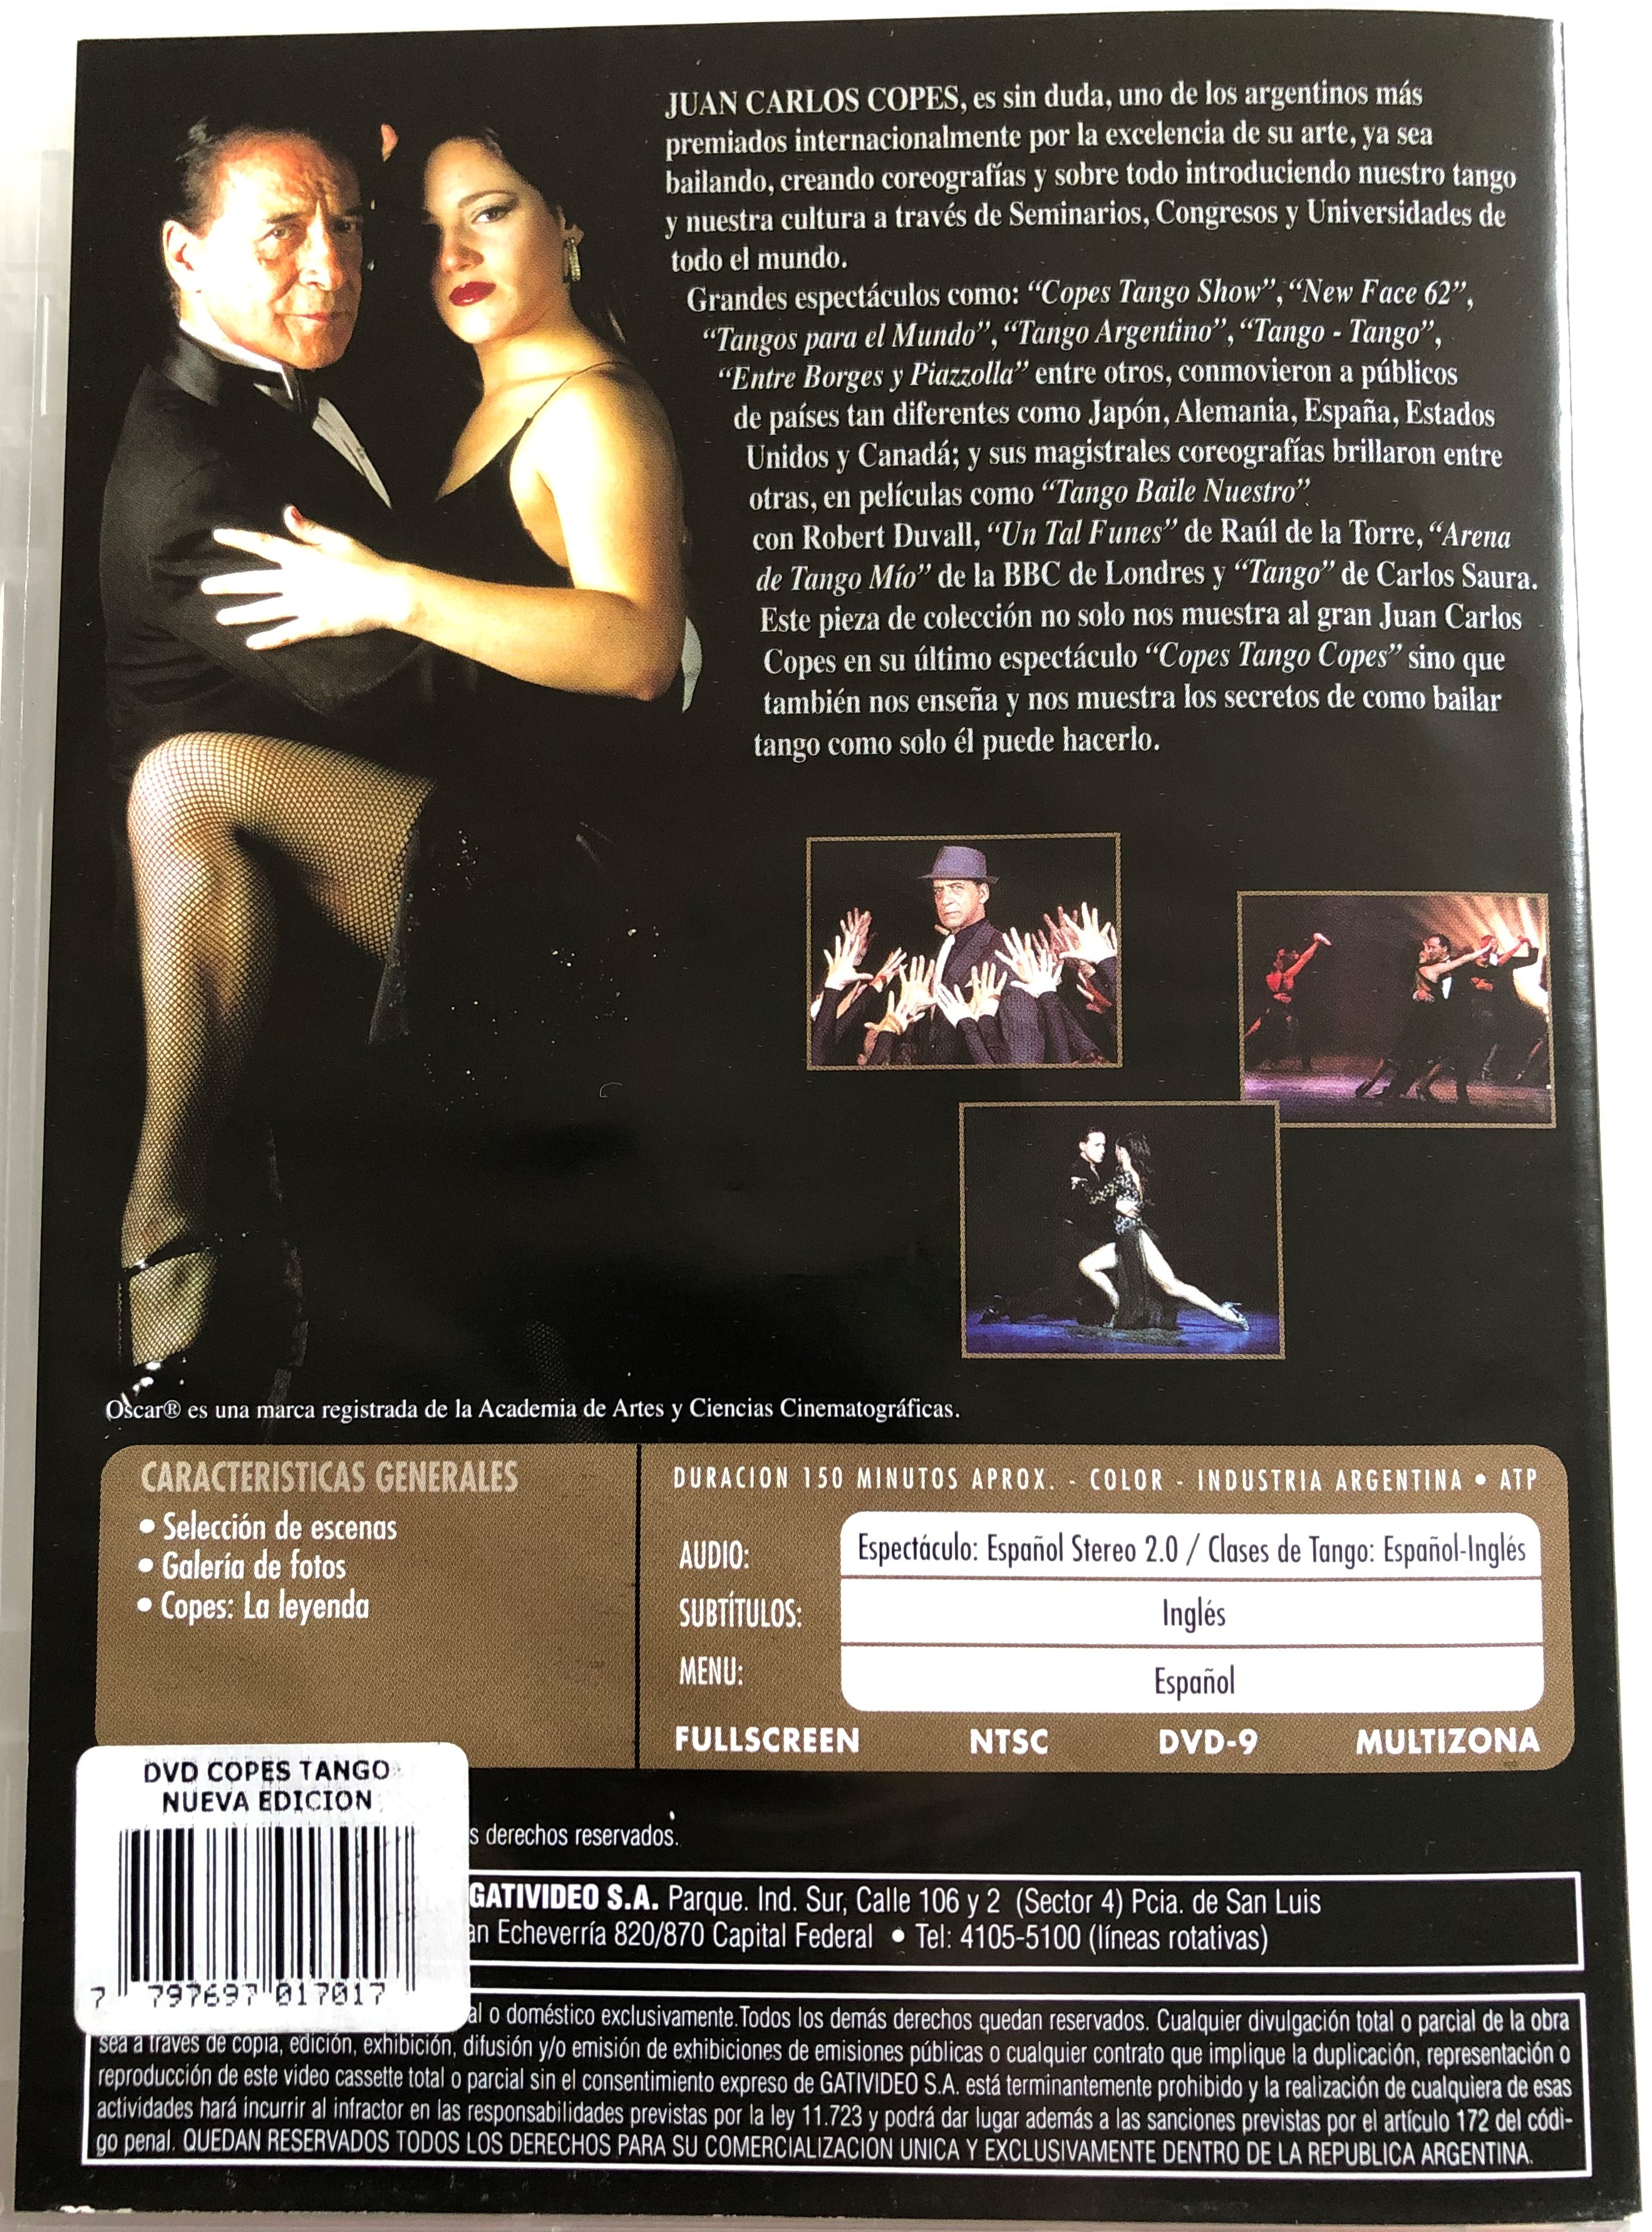 Copes Tango Copes DVD El Musical  1